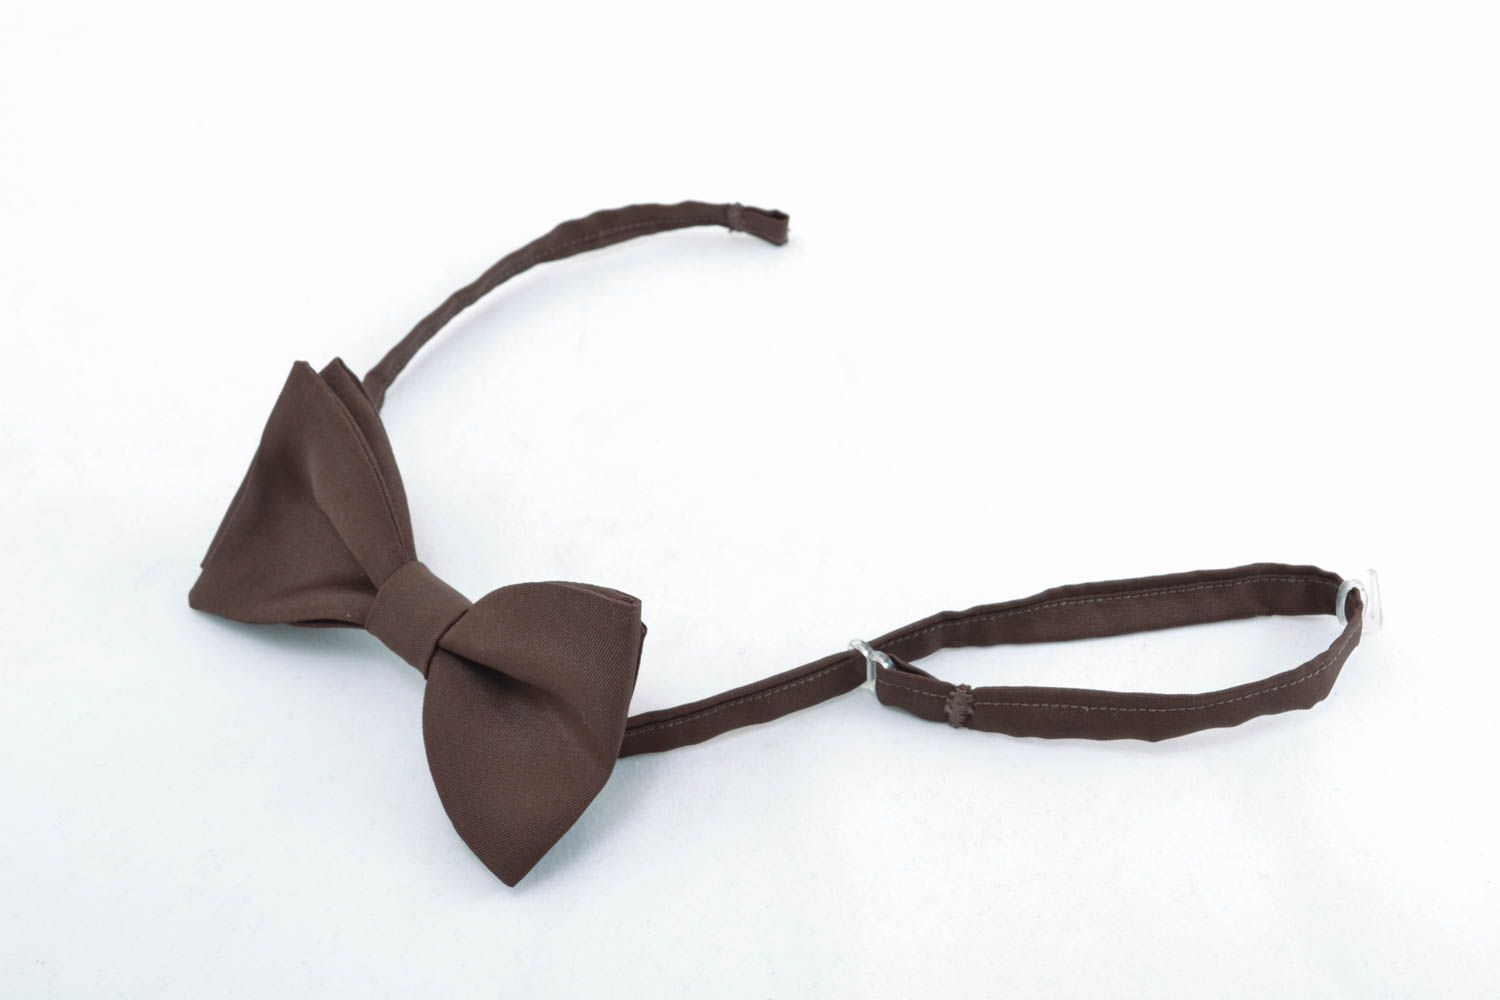 Оригинальный галстук-бабочка Коричневый фото 1